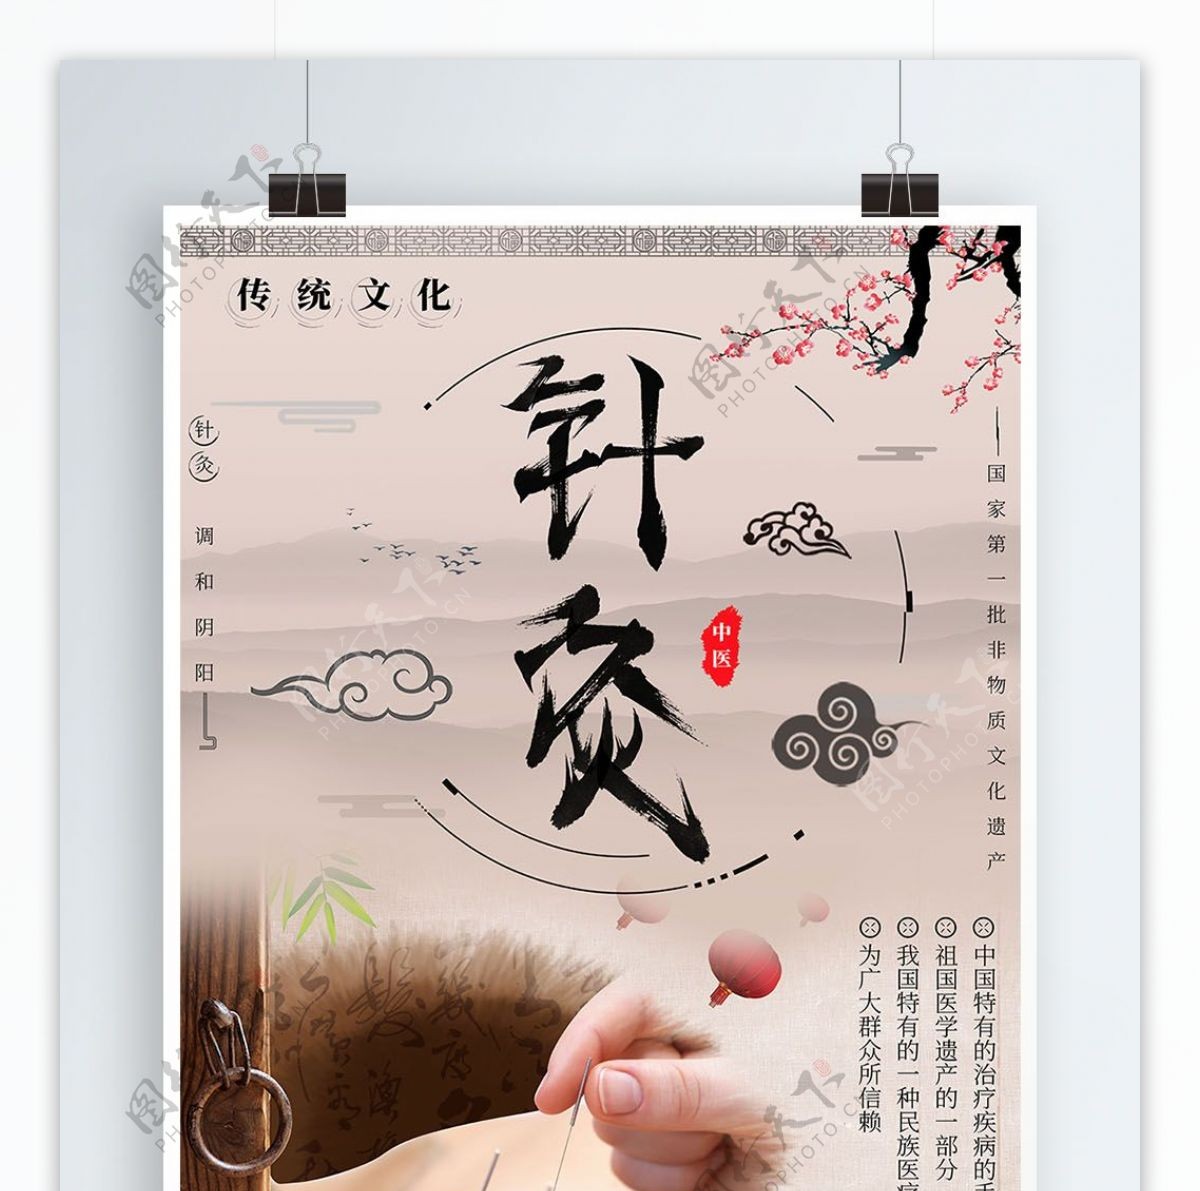 中国风针灸传统文化海报